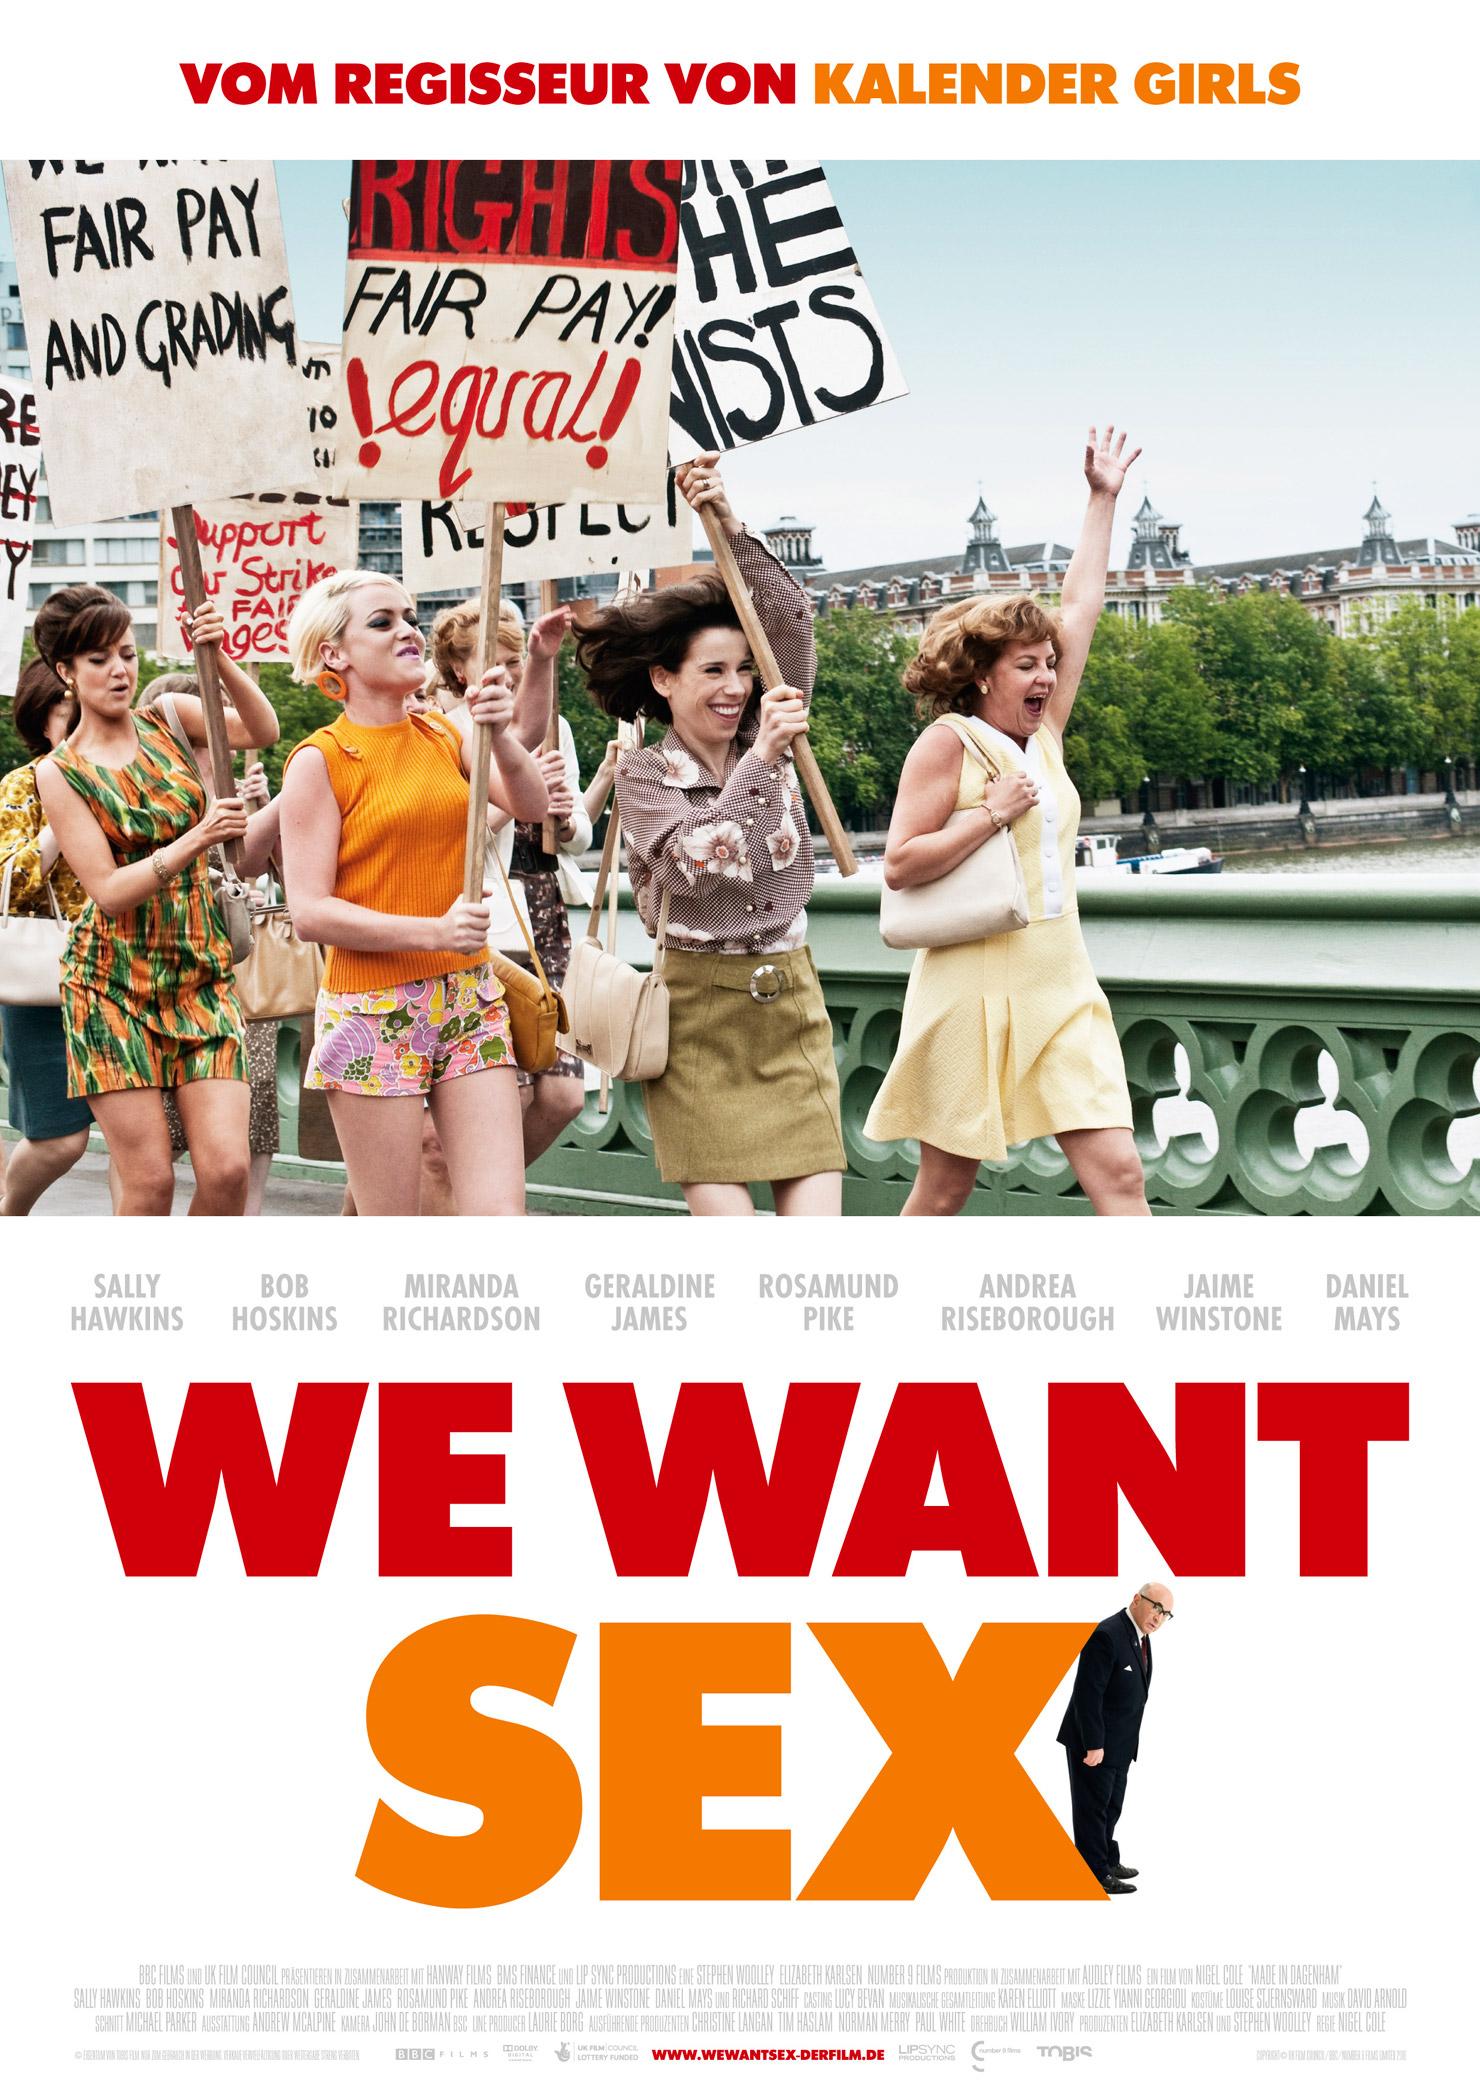 We Want Sex 2010 Im Kino Trailer Kritik Vorstellungen Daskinoprogrammde 9973